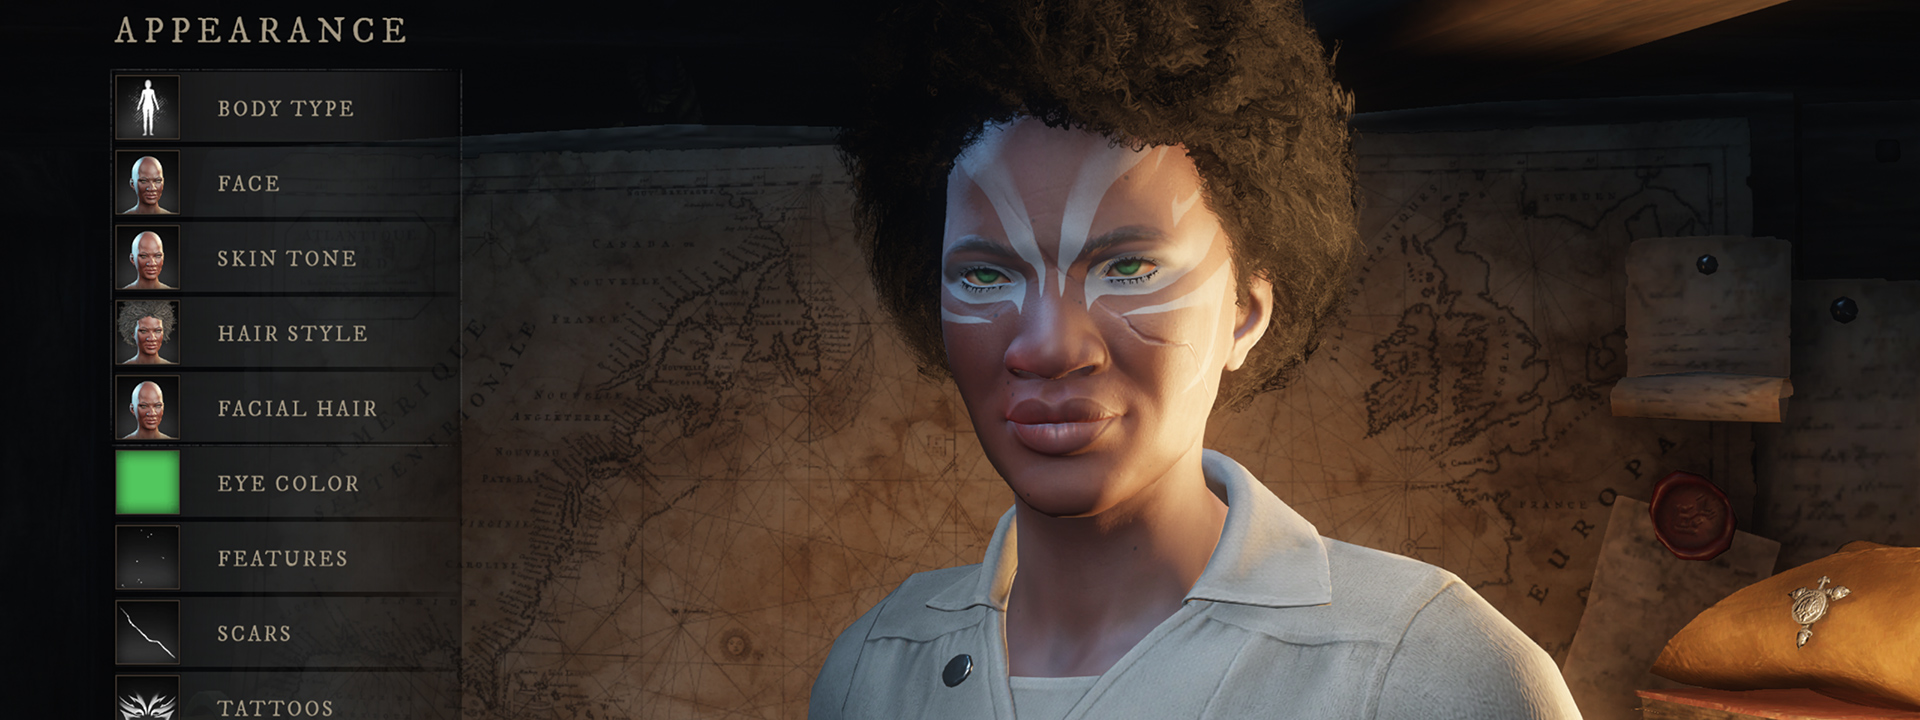 Zrzut ekranu interfejsu dostosowywania postaci, przedstawiający osobę z ciemną skórą i jasnoniebieskimi tatuażami wokół oczu.